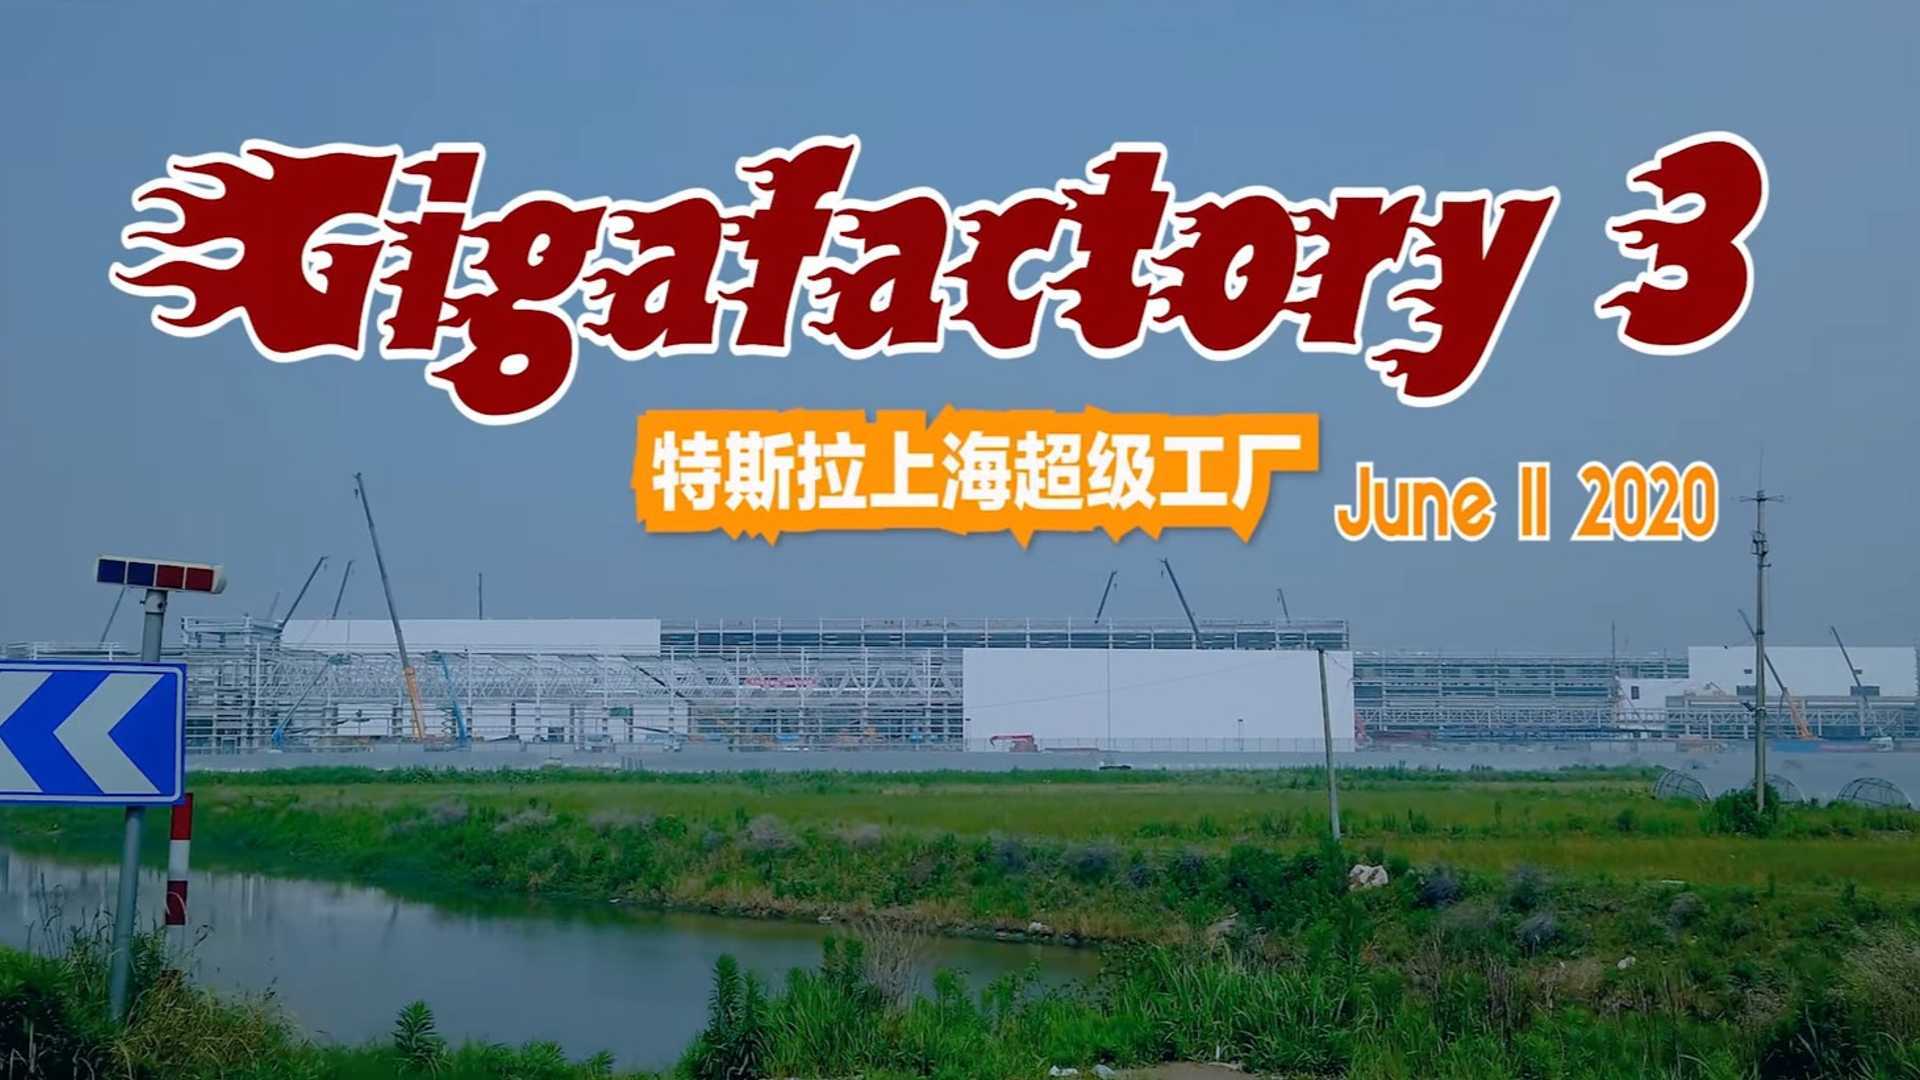 Тесла Гига Шанхай Строительство прогресс 11 июня 2020 года: видео